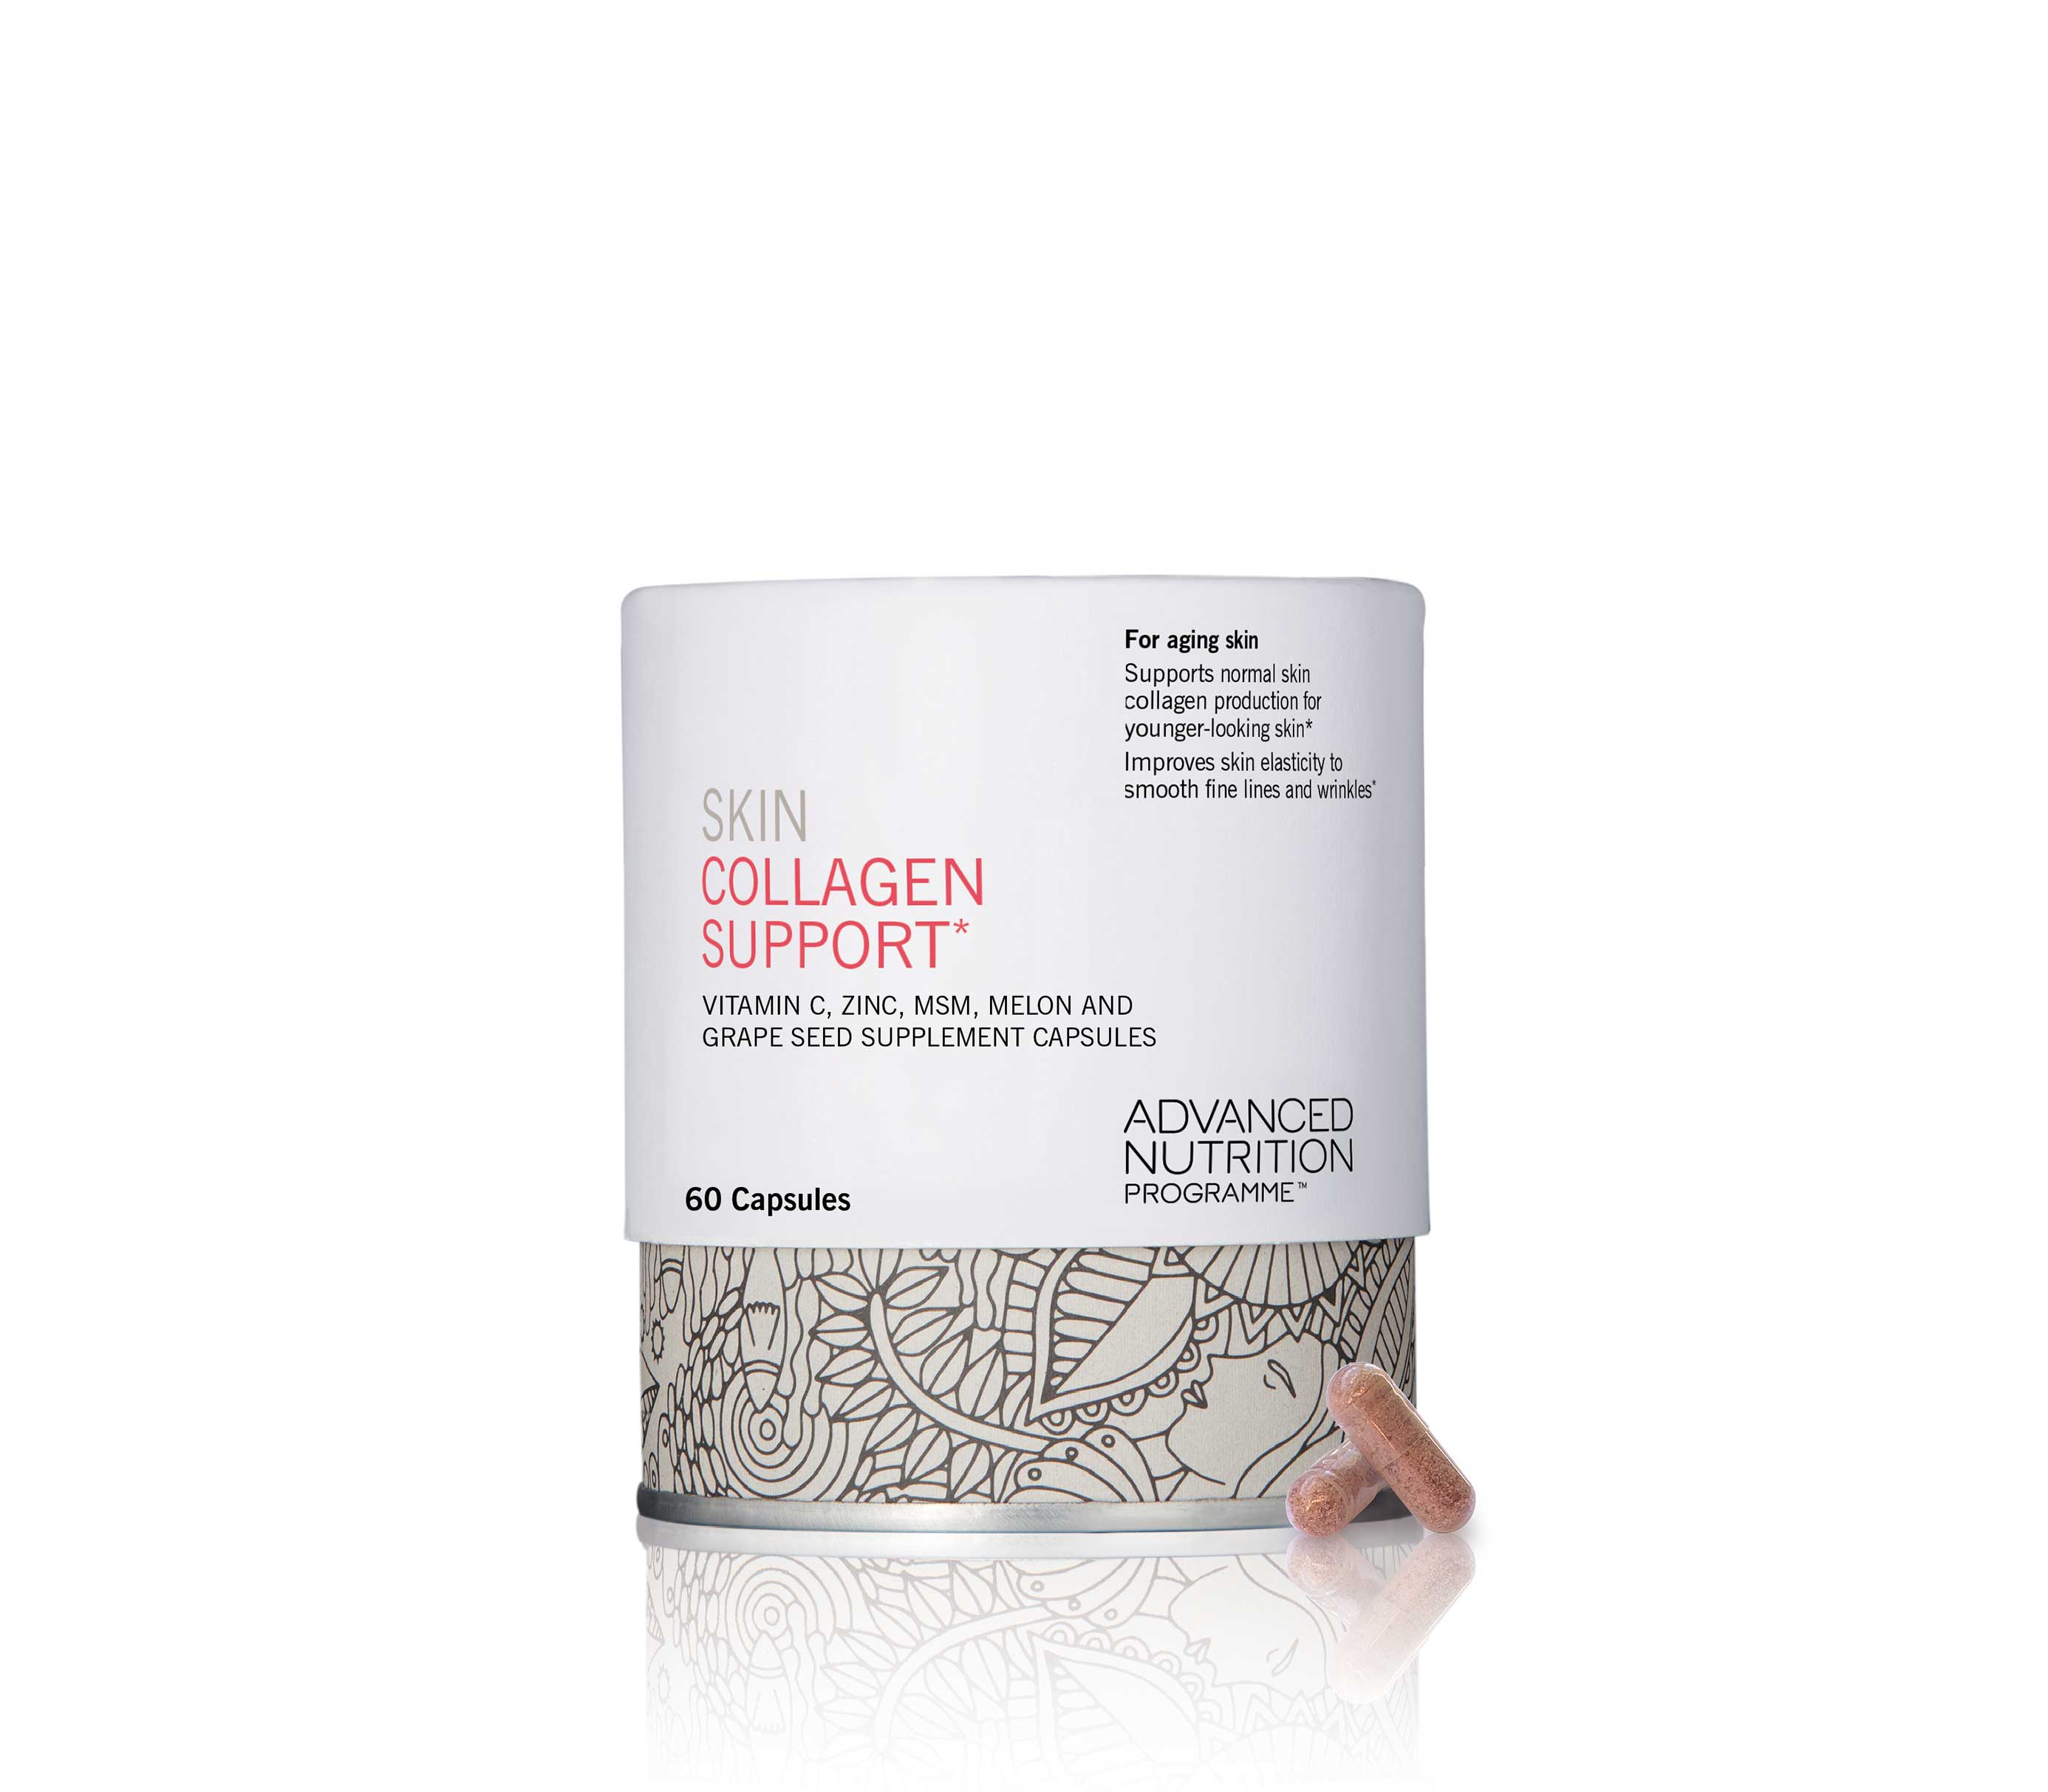 Skin collagen support